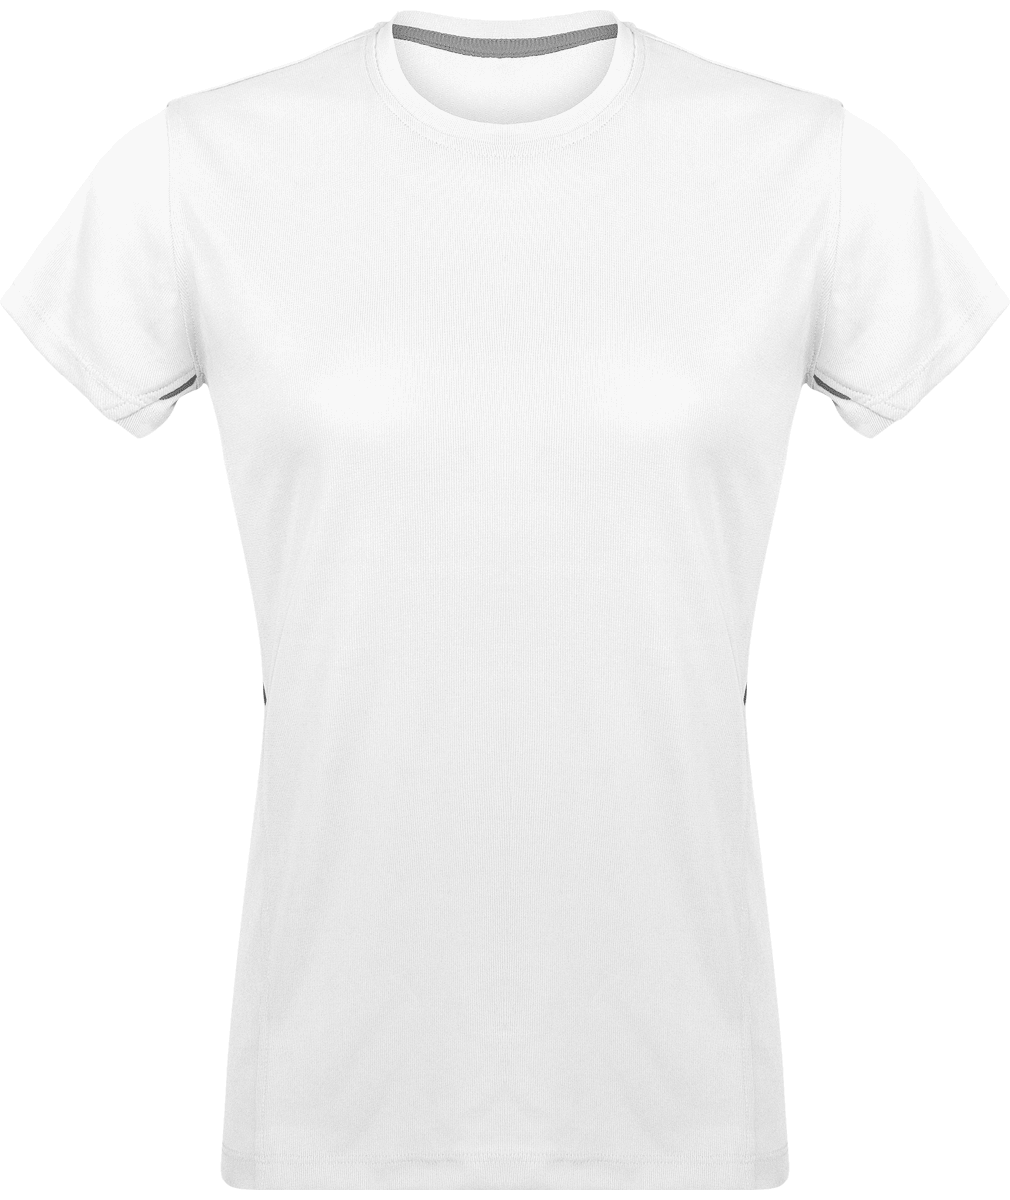 T-Shirt Femme Sport | Léger Et Respirant | Bi-Matière White / Silver